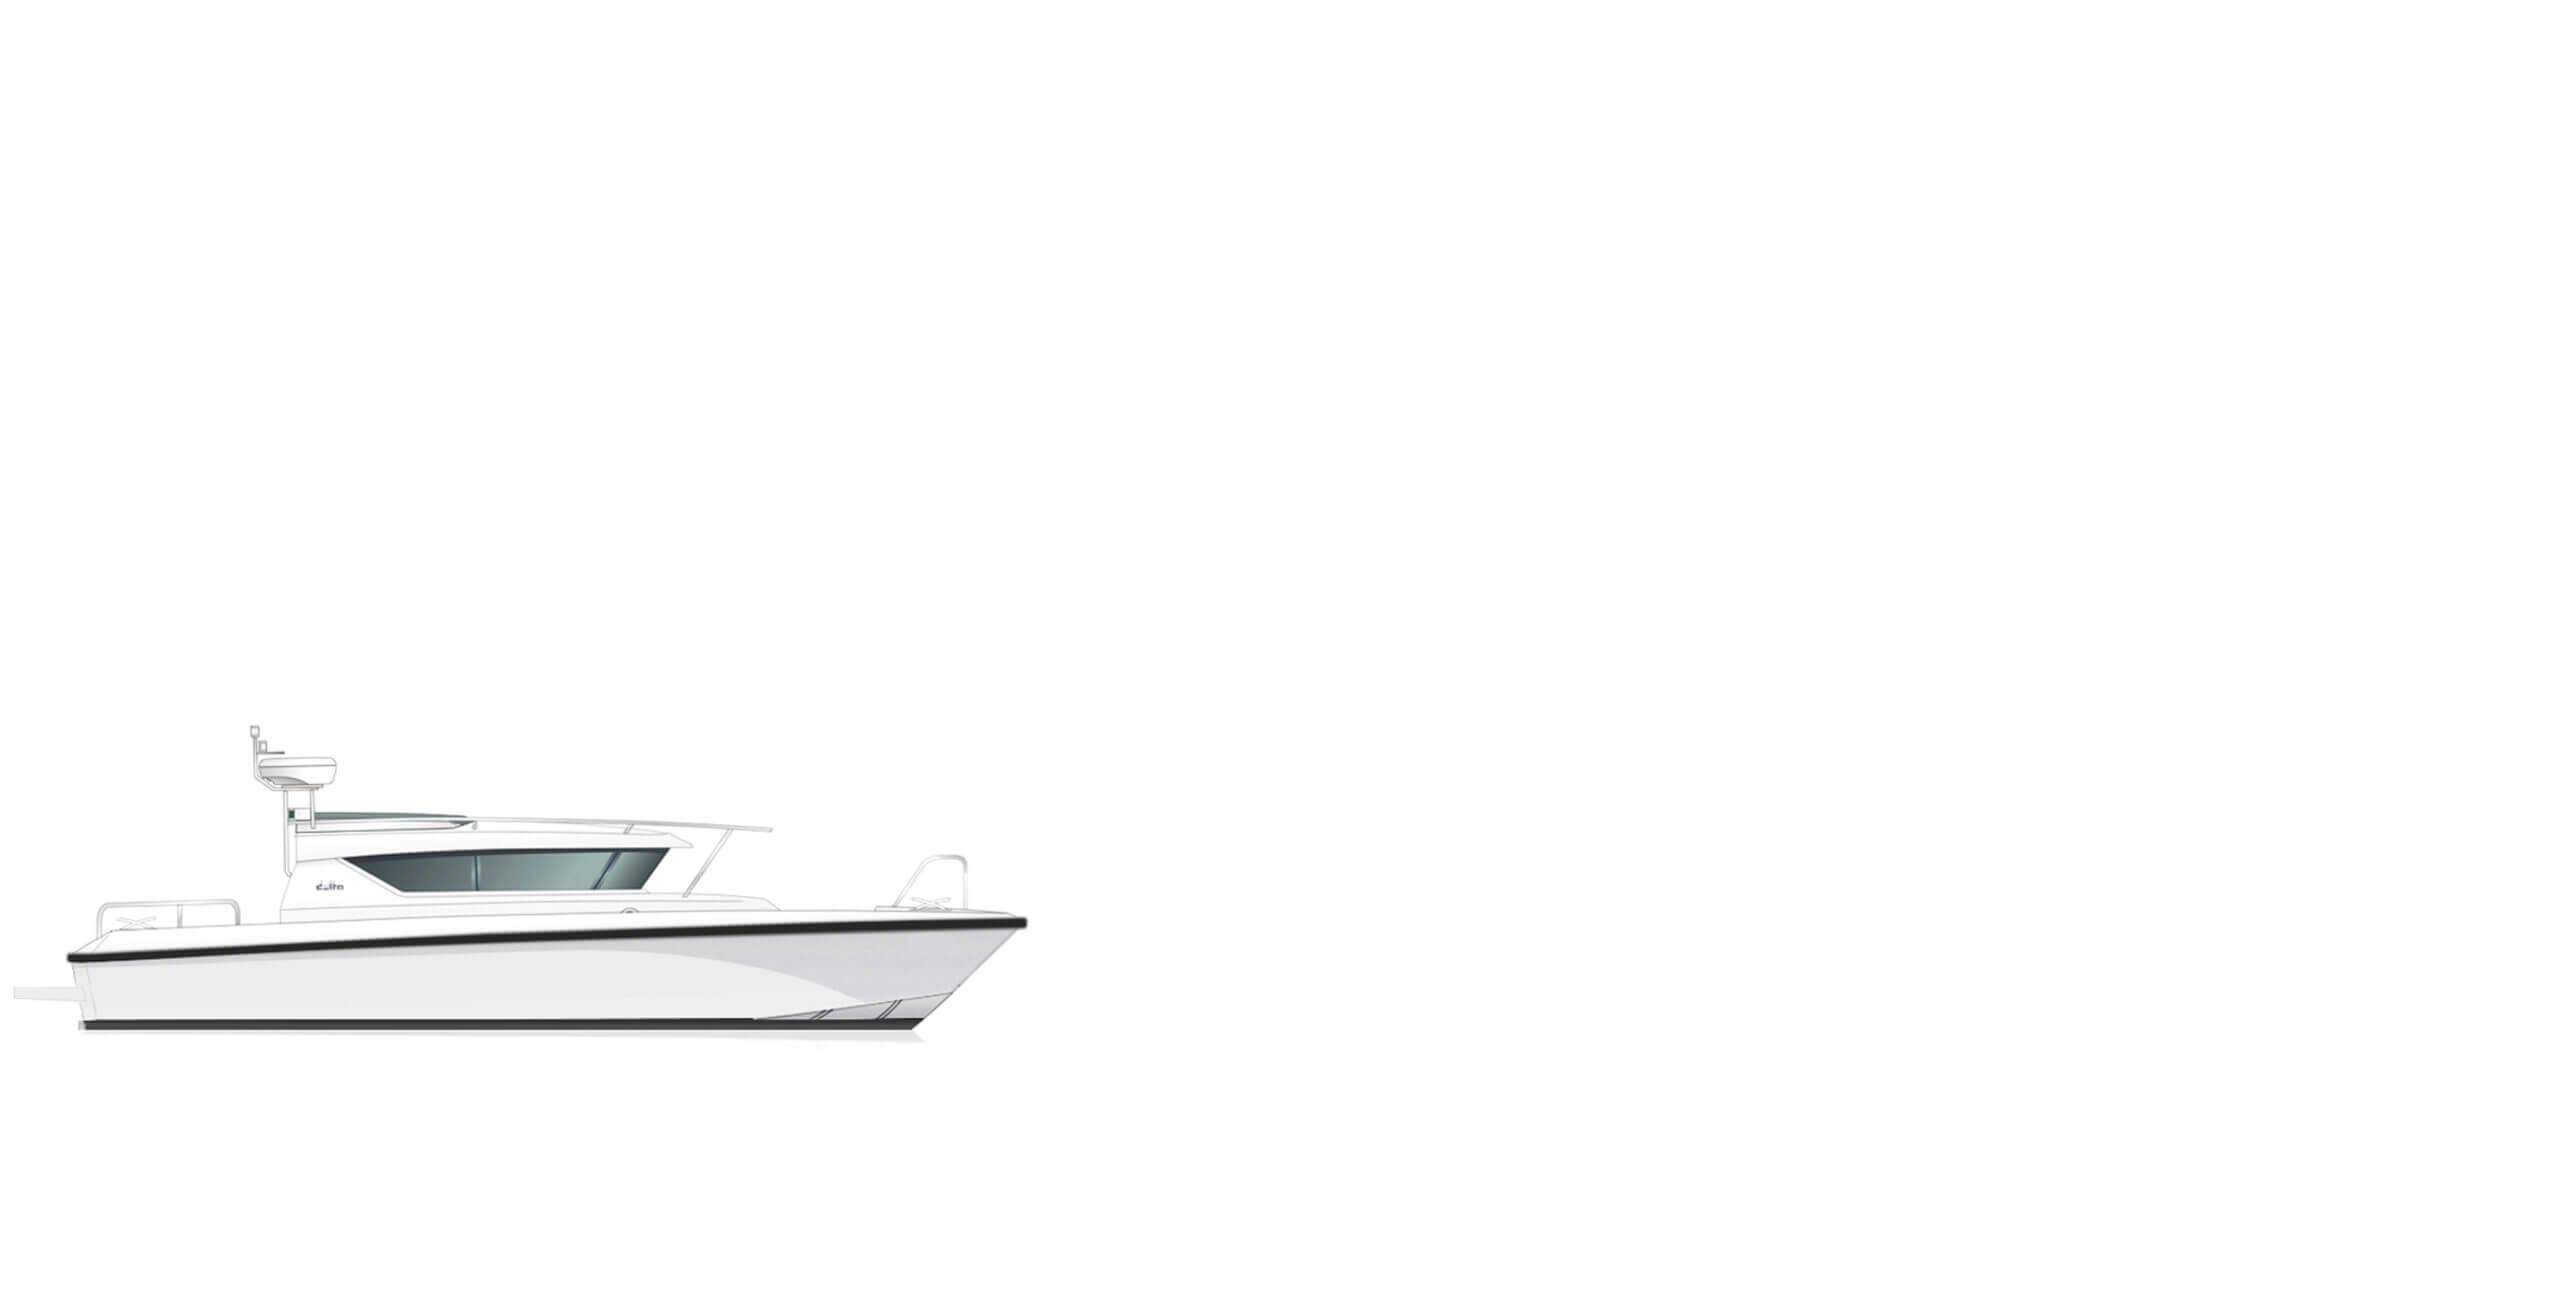 Boat Model: rhoddelta_sec3_delta_290sw_1